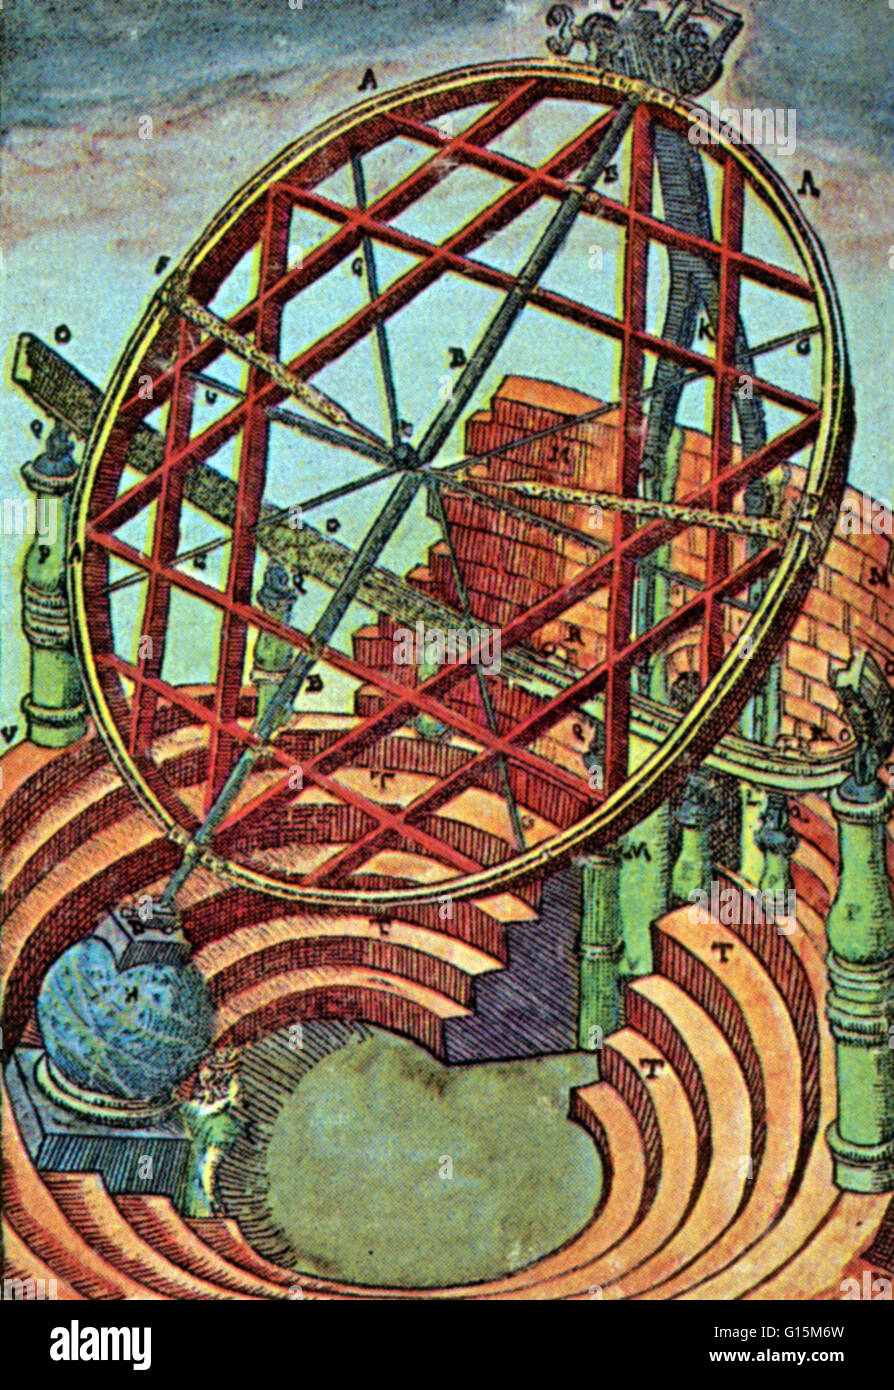 Tychos äquatorialen Armillary, die etwa 16 Fuß hoch und hatte ein eigene Gehäuse in Brahes Observatorium. Tycho Brahe (1546-1601) war ein dänischer Astronom. Nach immer Interesse an der Astronomie als Student in Kopenhagen, Tycho Brahe erkannte die Stockfoto